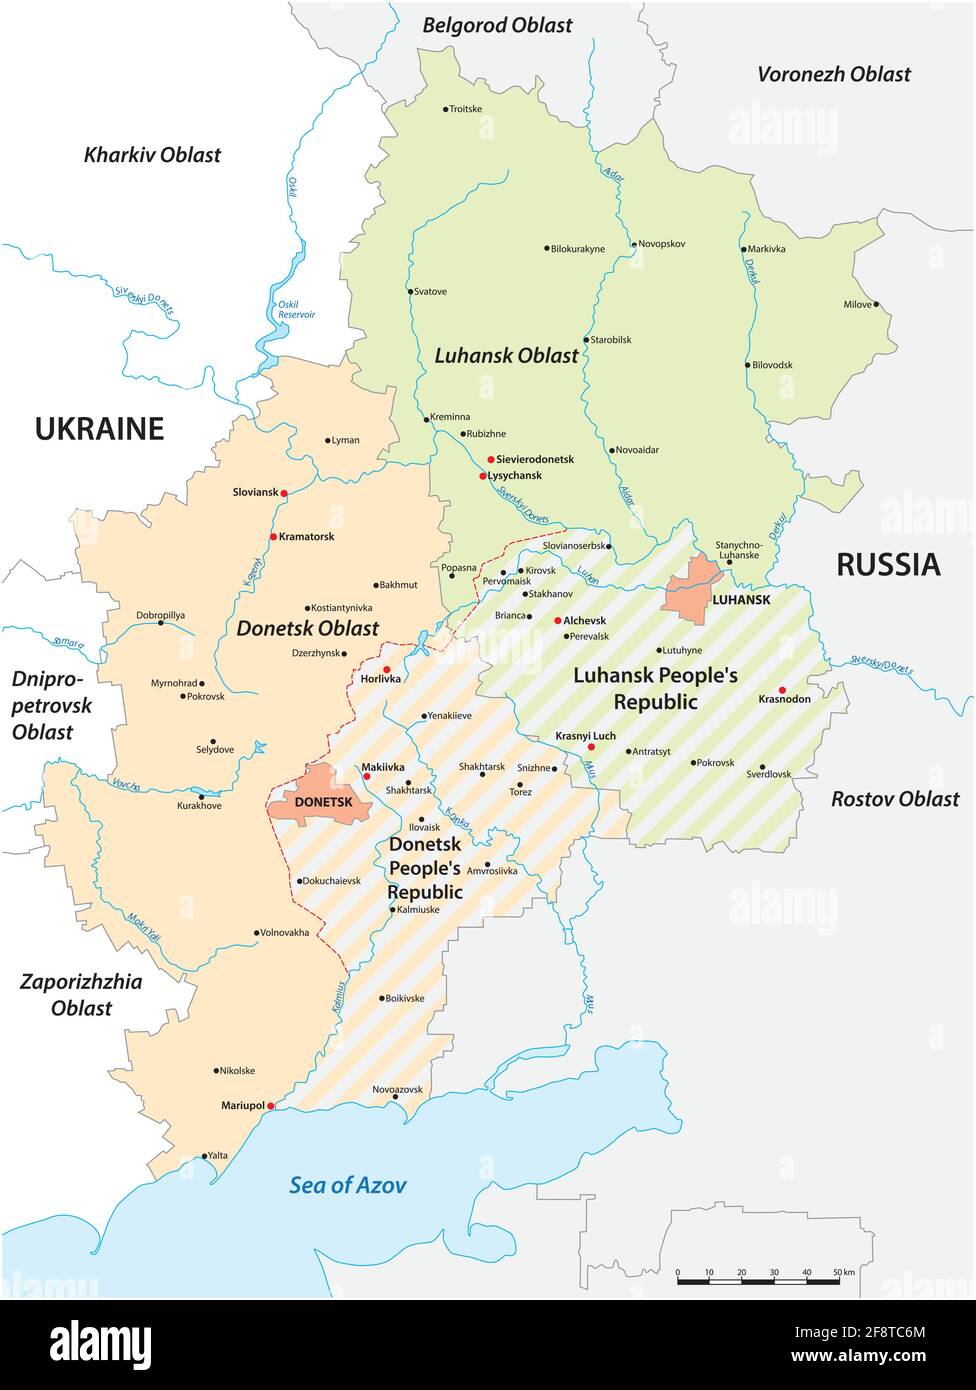 Noticias Internacionales - Página 2 Mapa-de-la-disputada-region-de-donbass-entre-ucrania-y-rusia-2f8tc6m